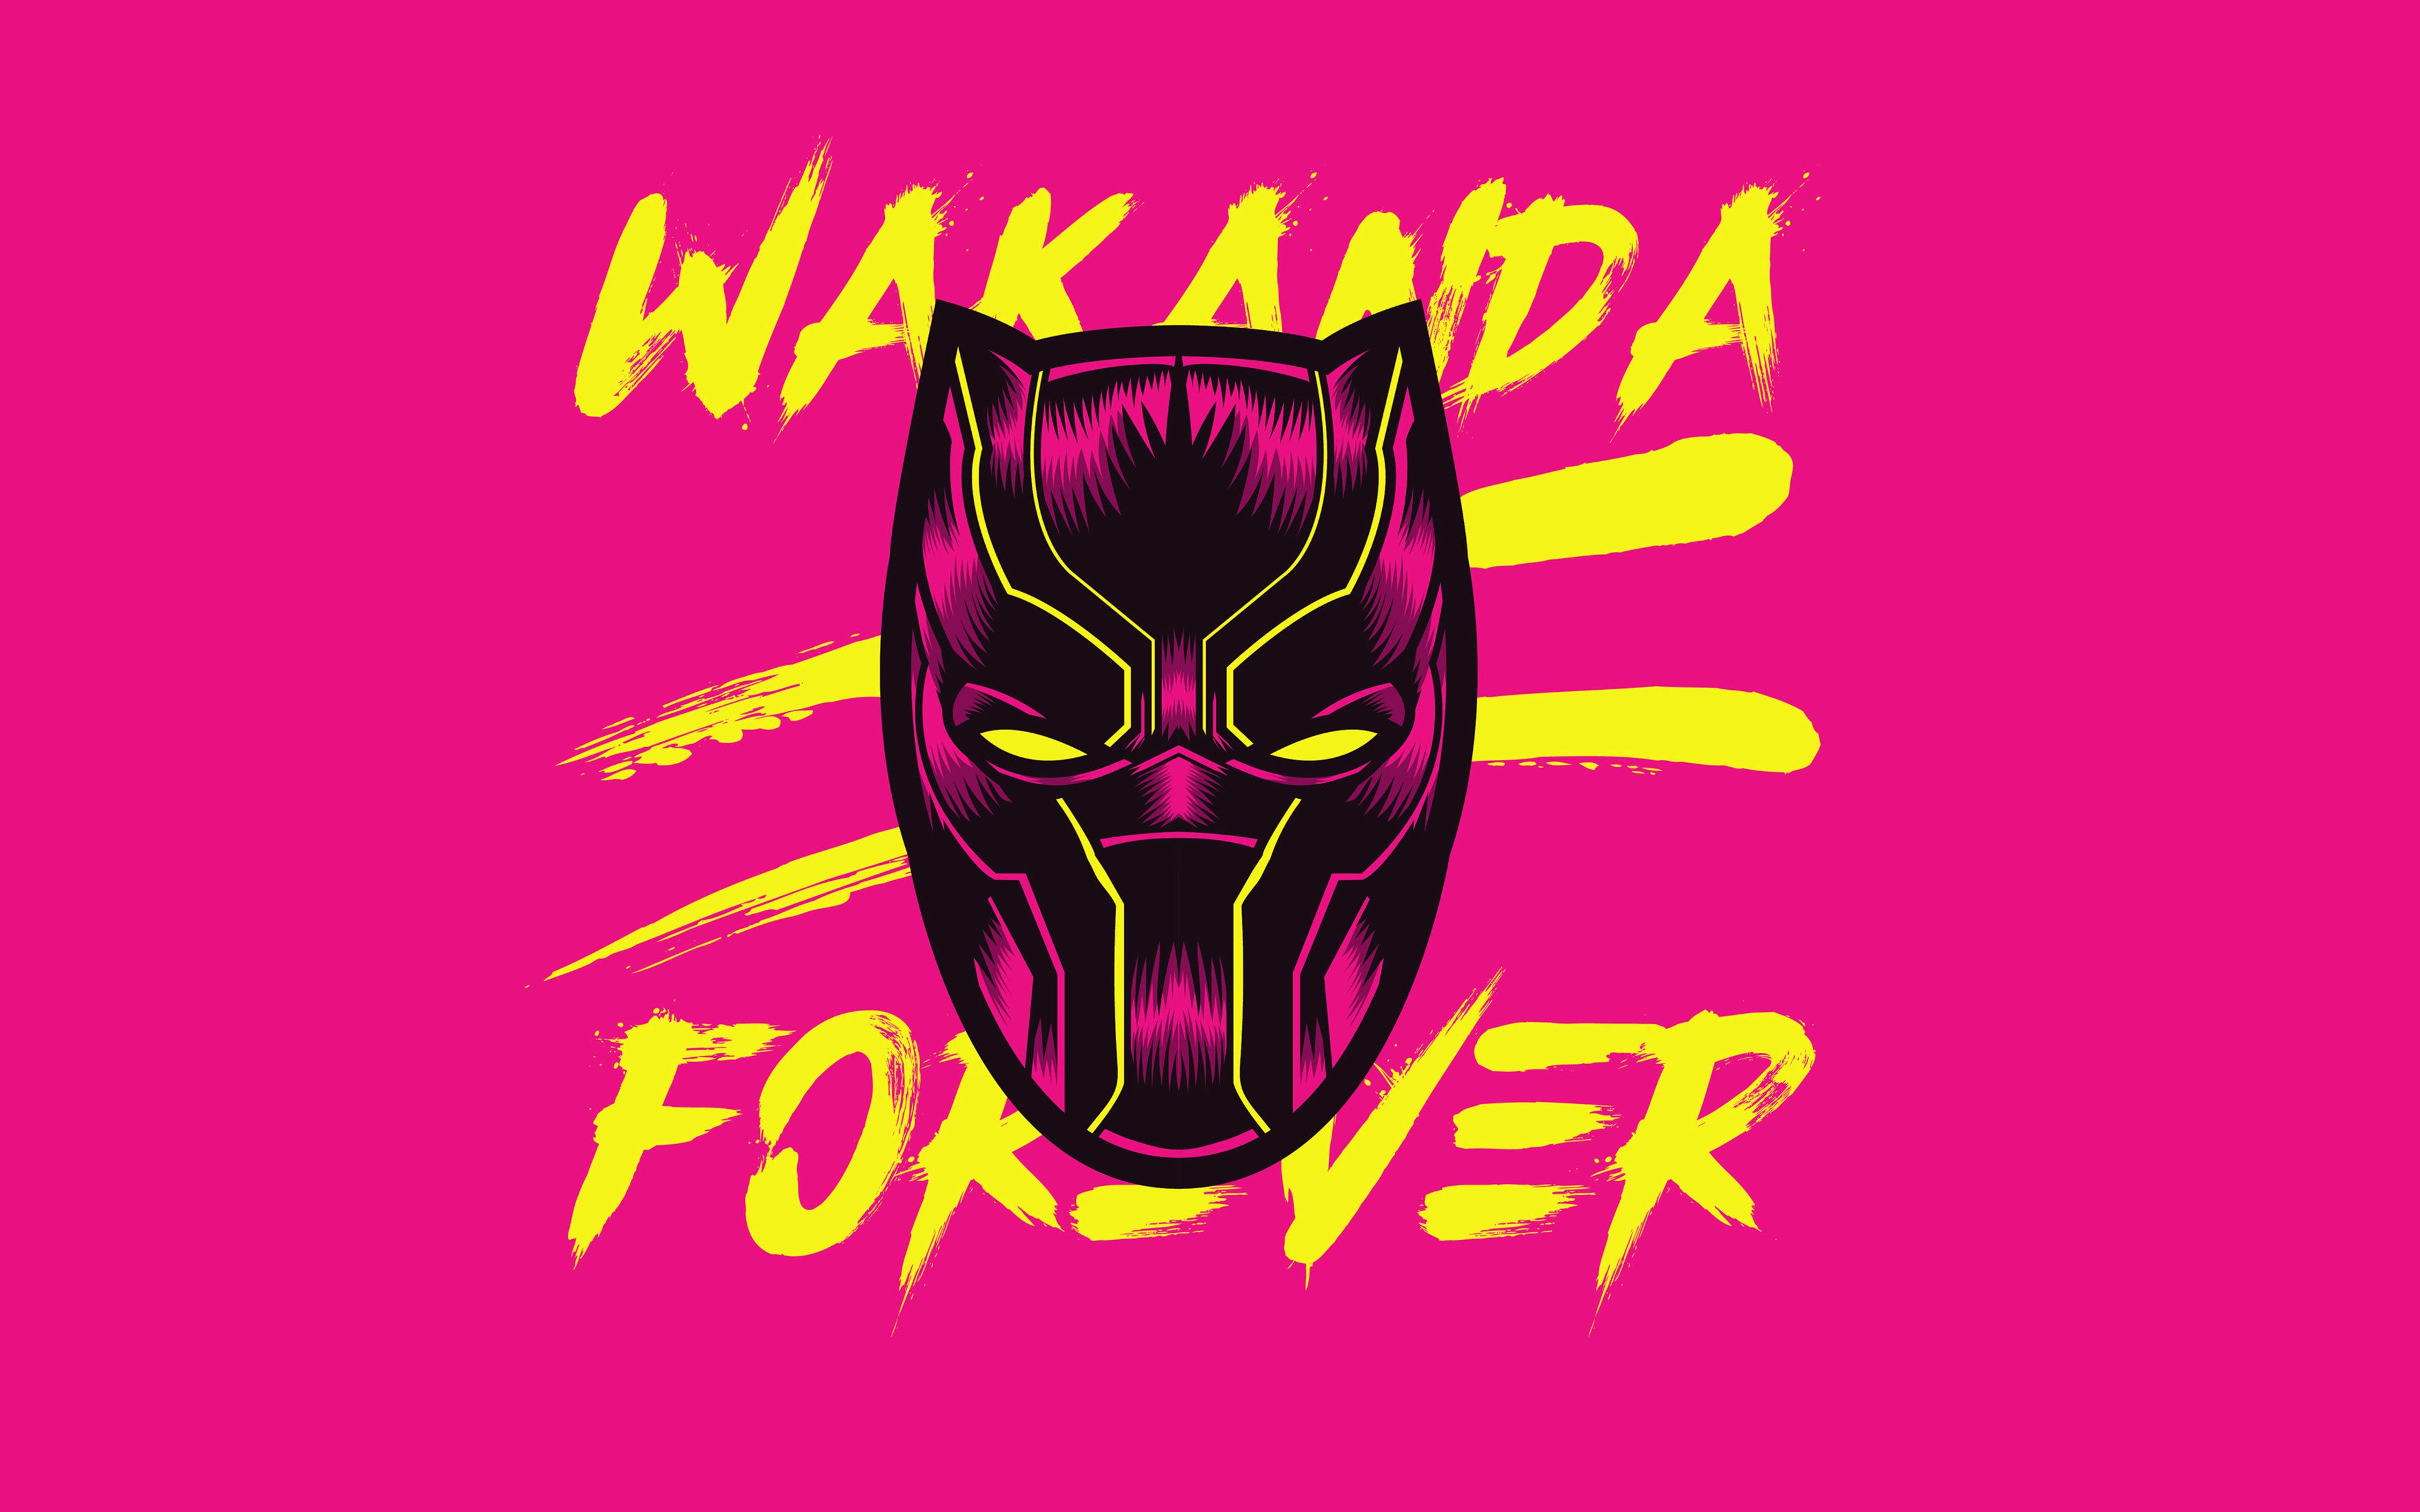 Wakanda Forever Wallpapers.